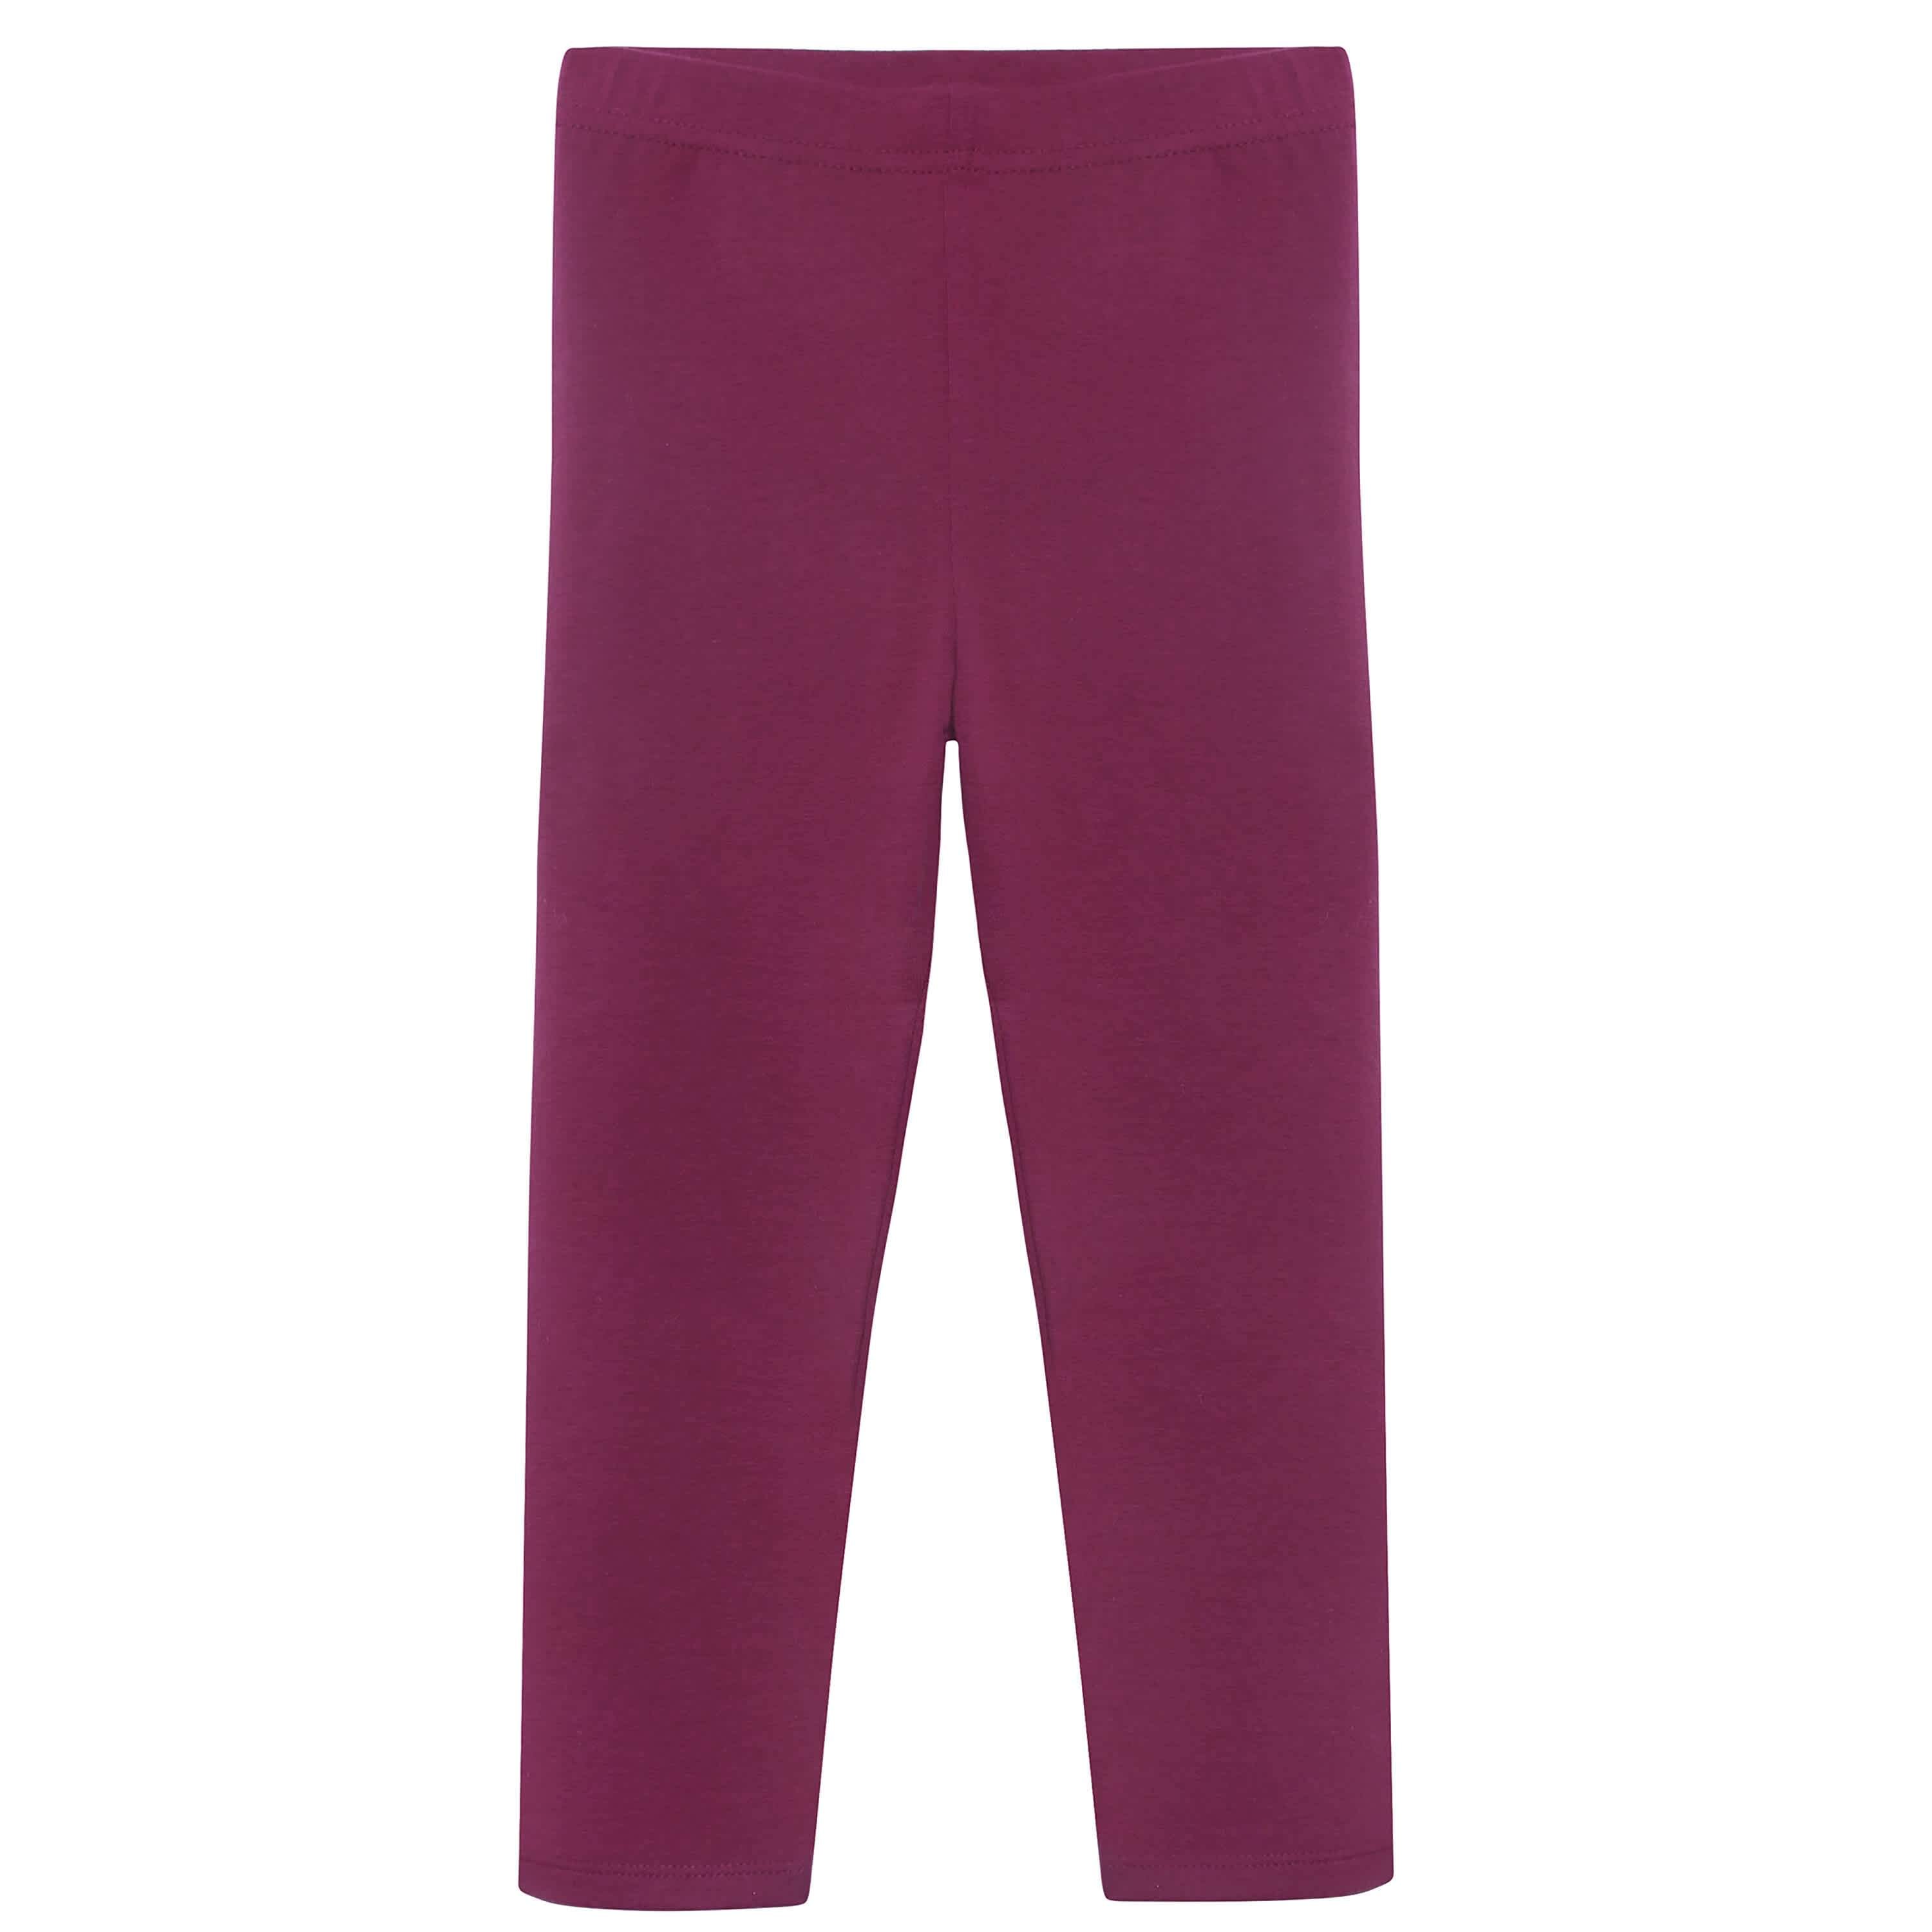 Infant & Toddler Girls Purple Leggings – Gerber Childrenswear